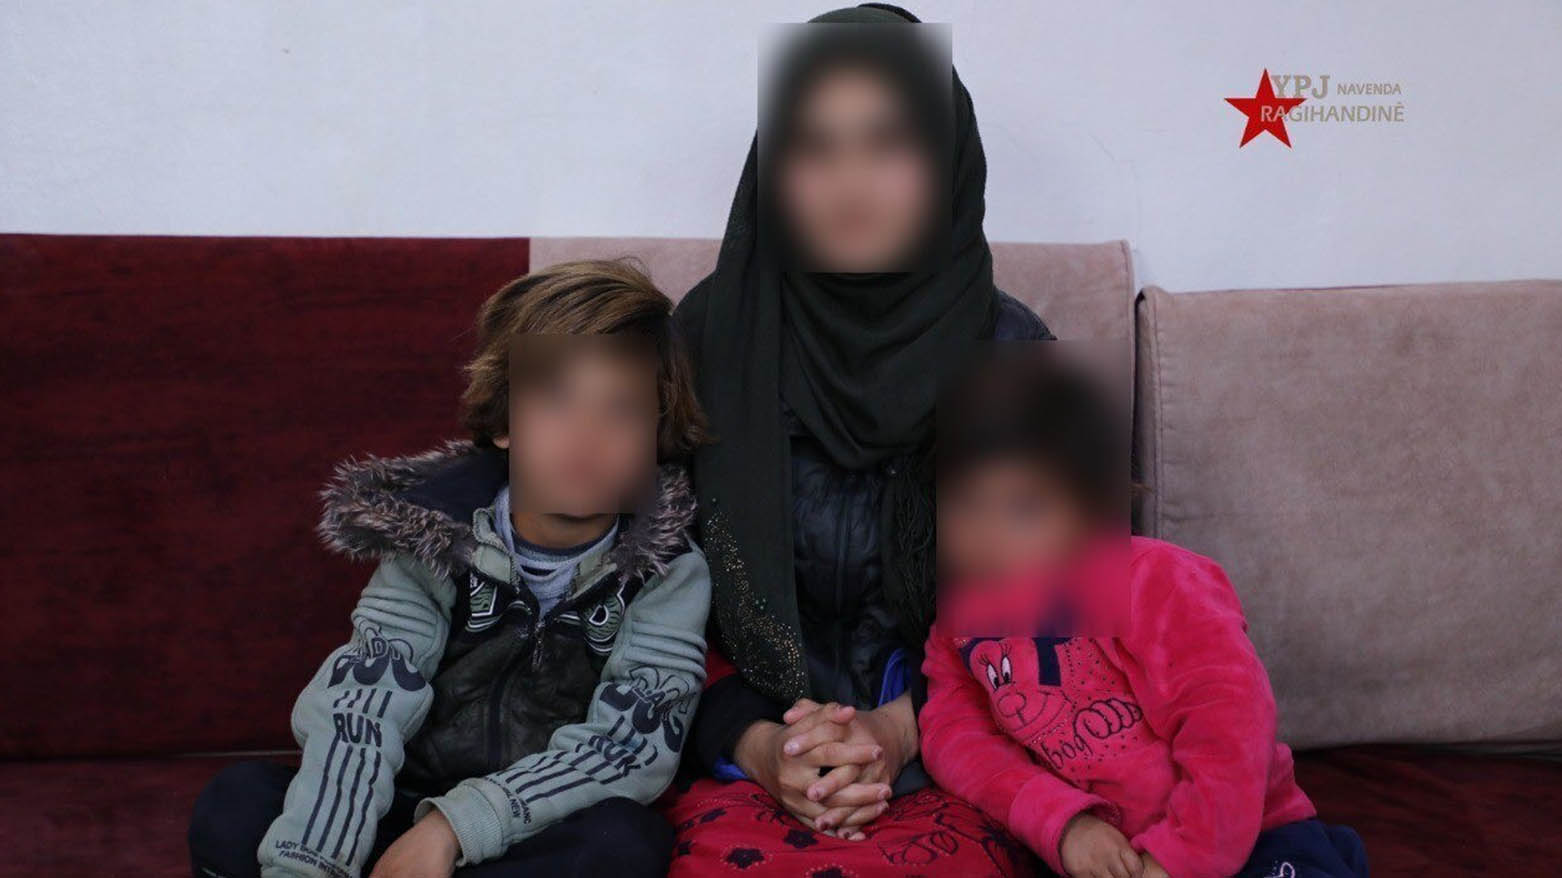 Yezidi woman found in Syrias alHol camp